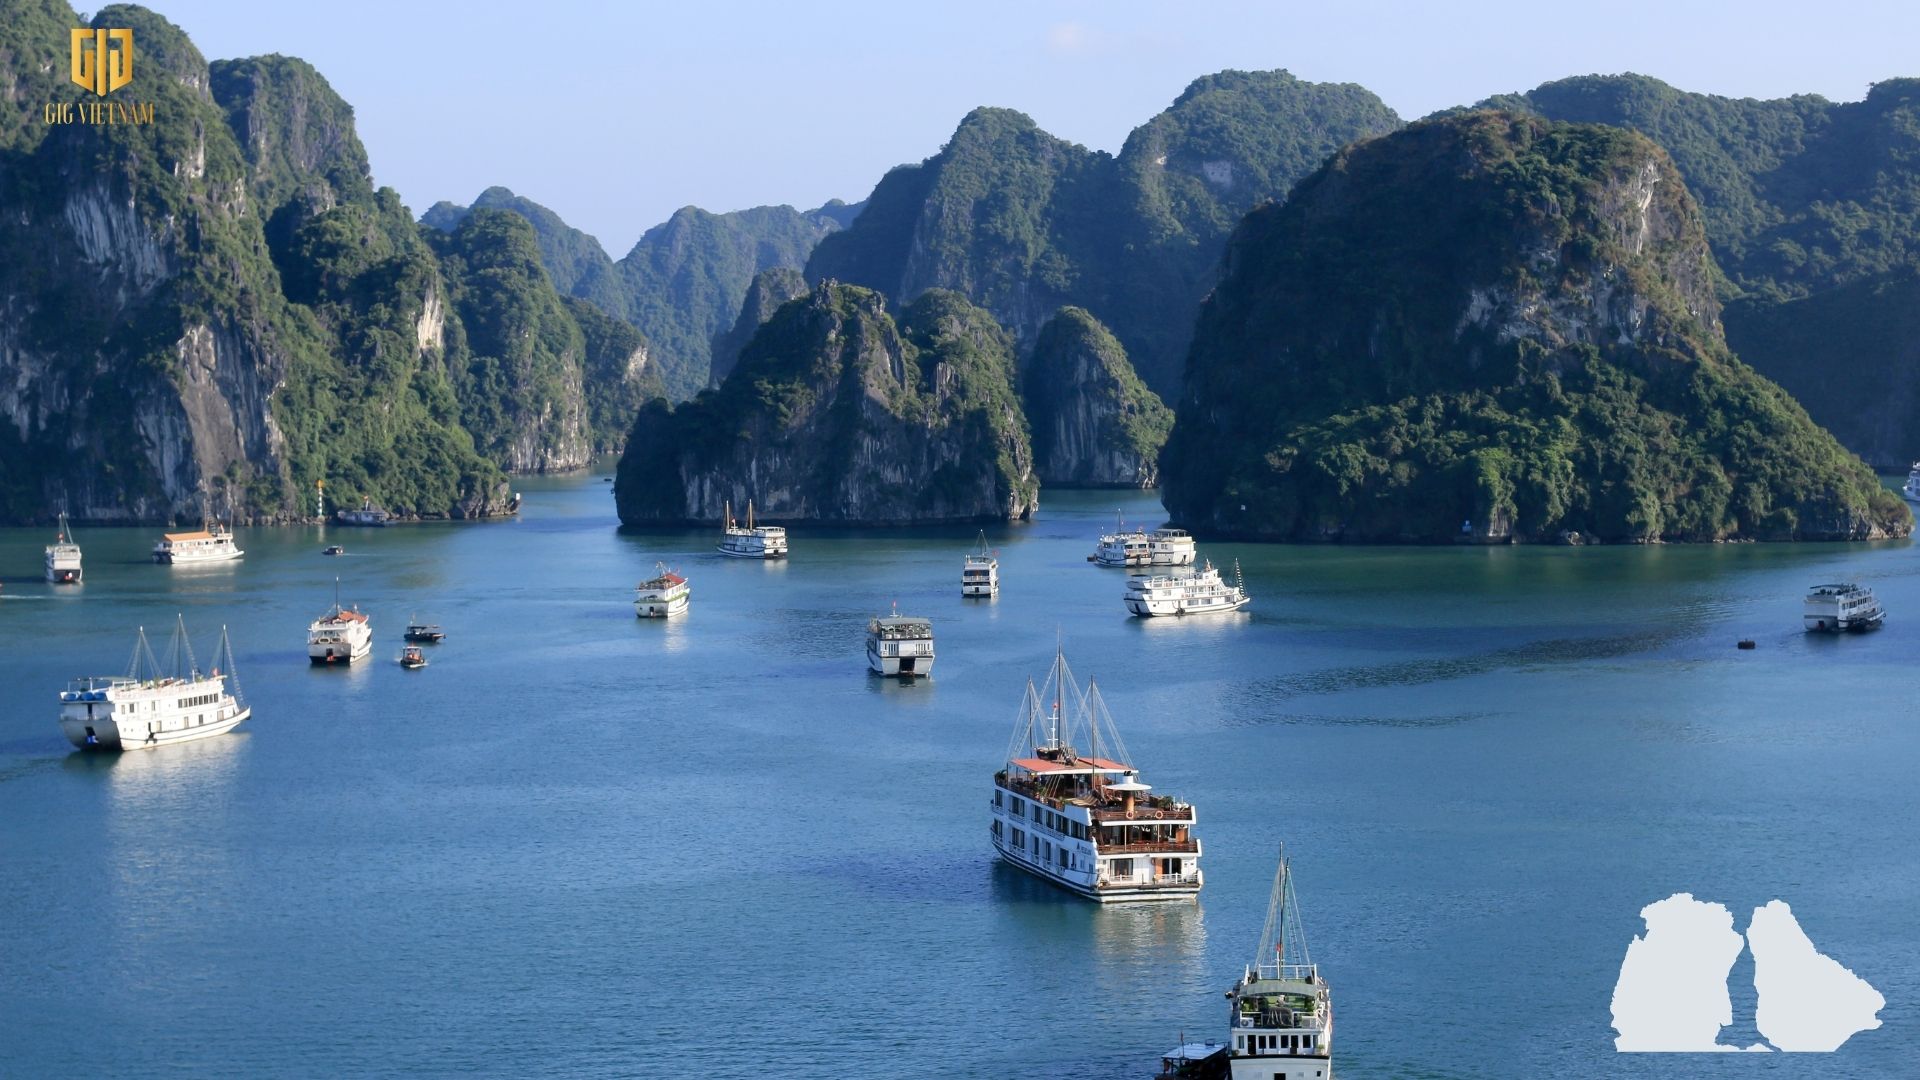 Tháng 6 nên đi du lịch ở đâu? Top 10 các tour du lịch tháng 6 hàng đầu Việt Nam - Vịnh Hạ Long